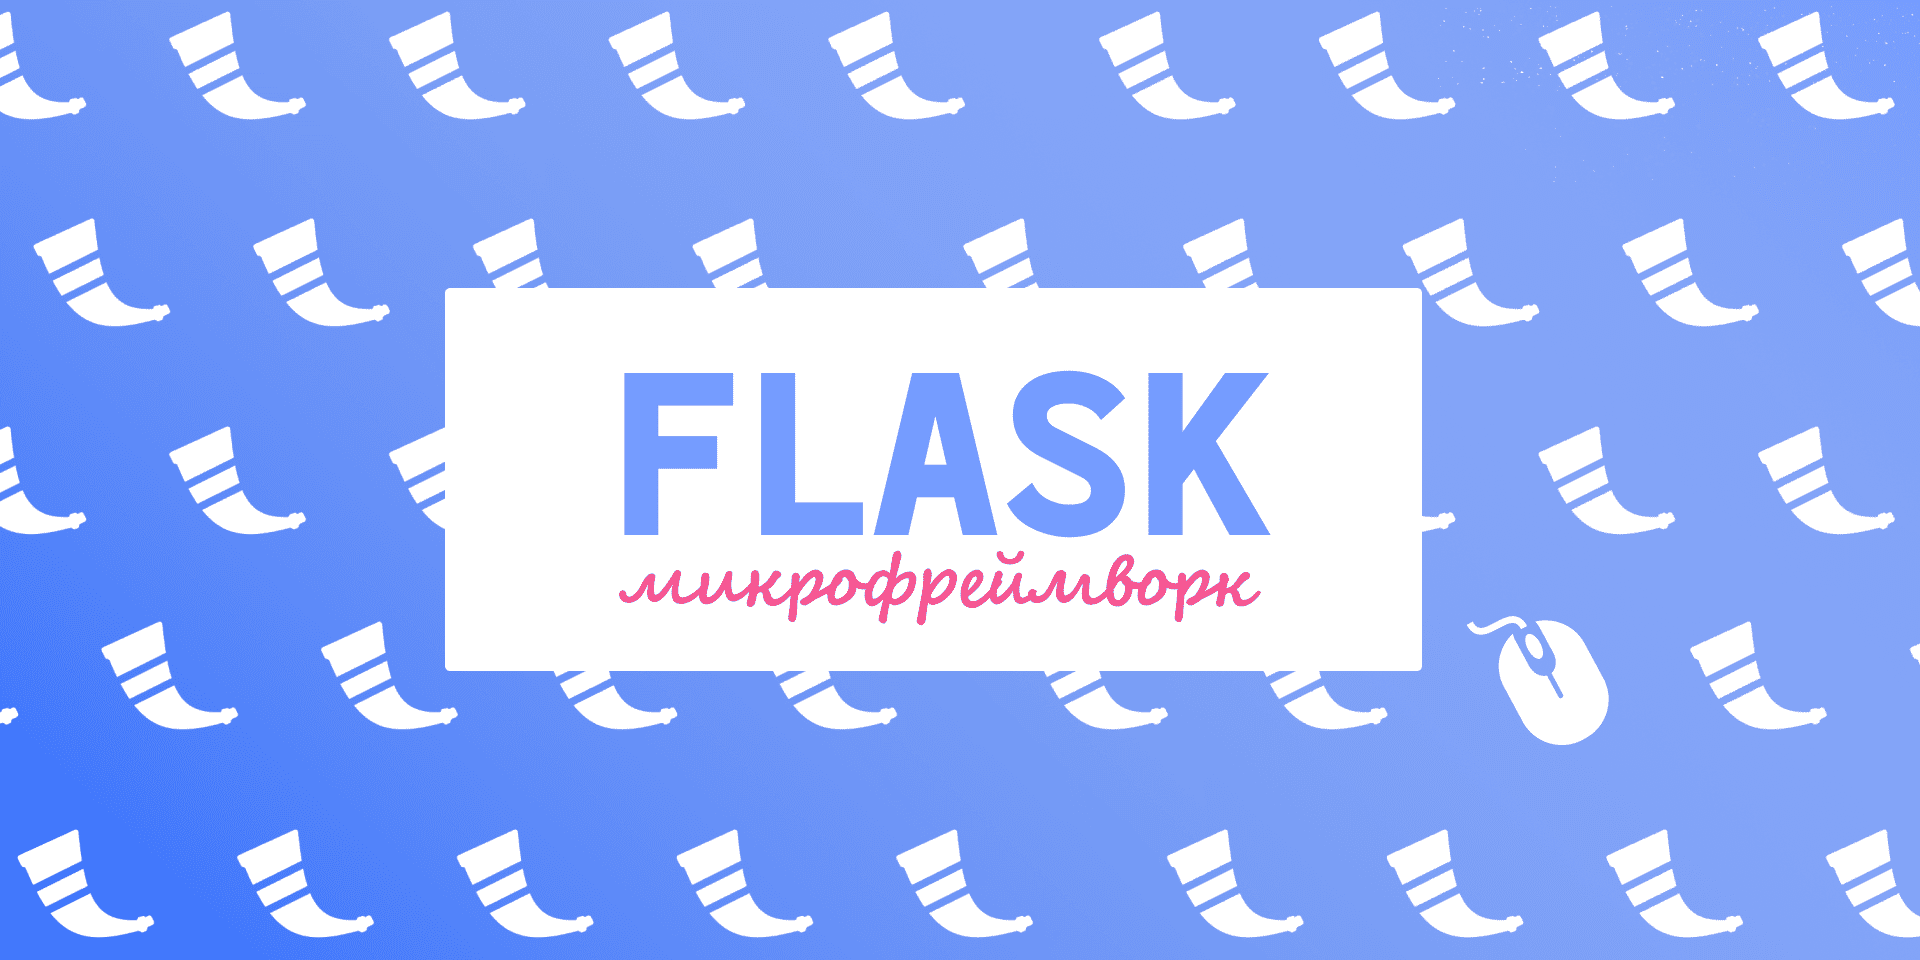 Flask: основы и преимущества популярного фреймворка